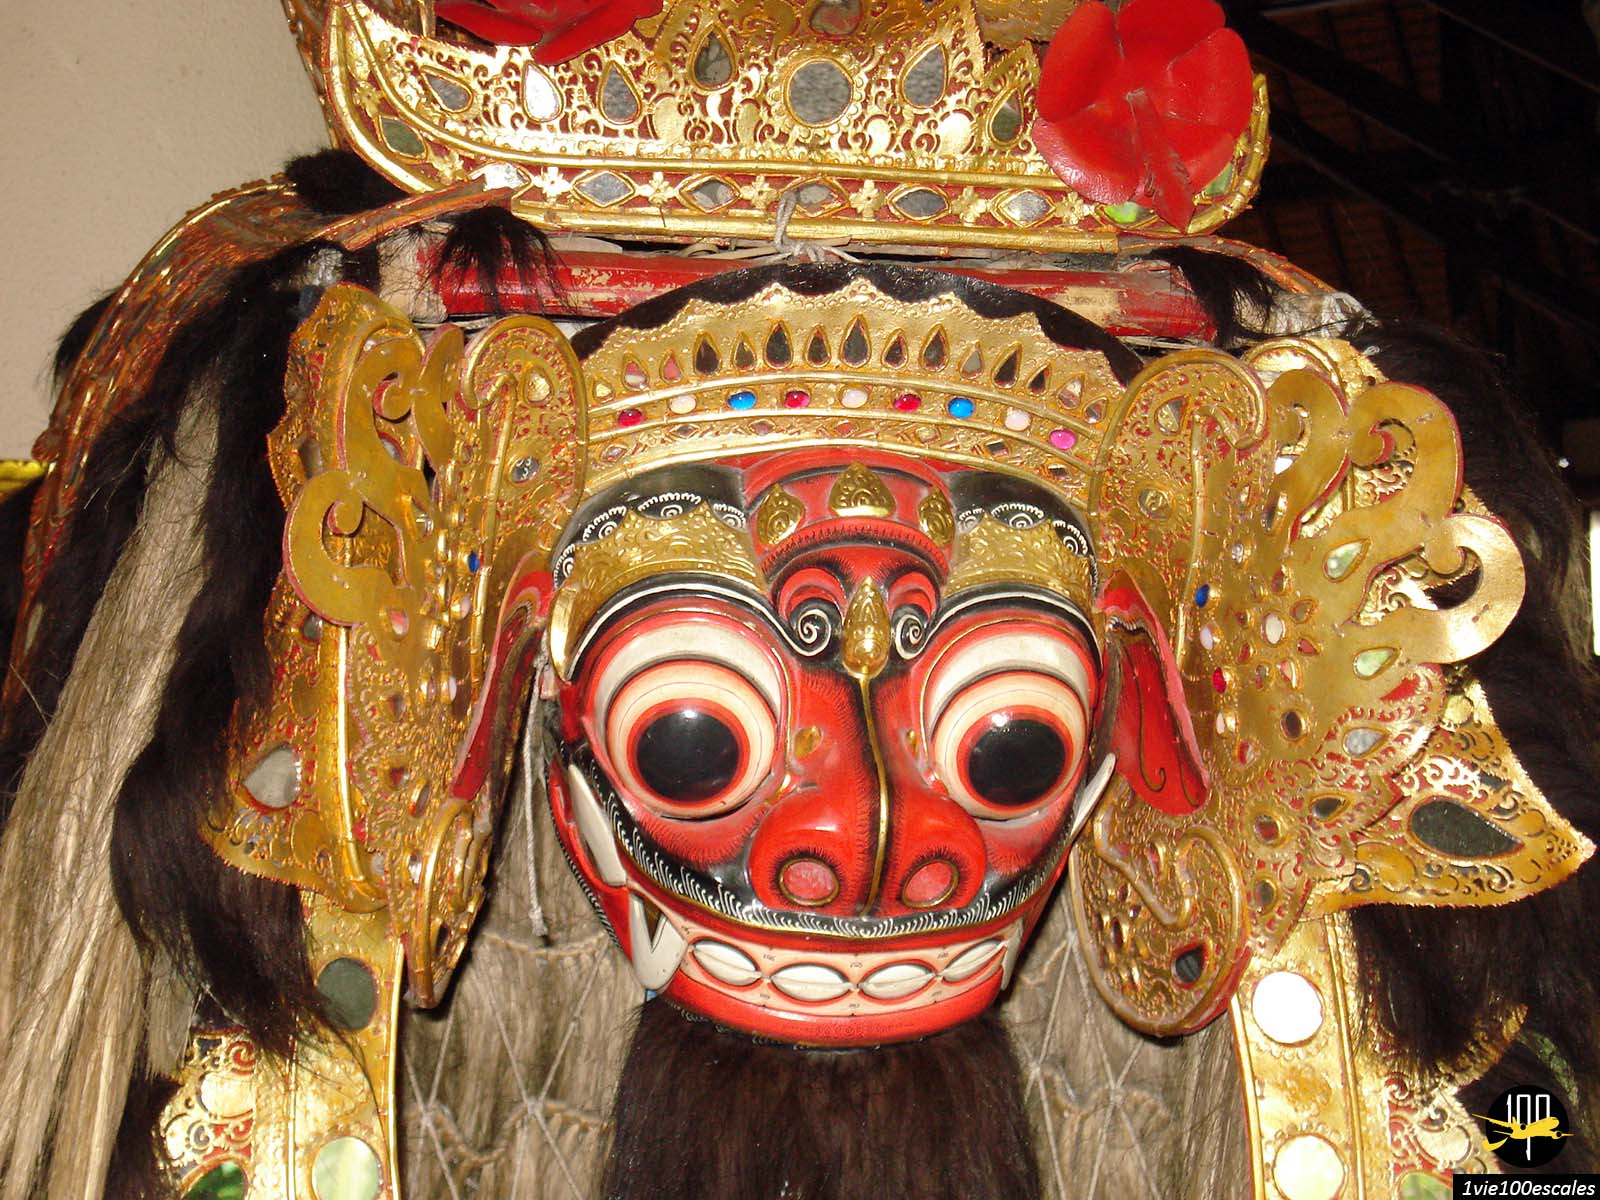 Masque du Barong Rangda une figure très importante du théâtre balinais incarnée par une vieille femme démoniaque